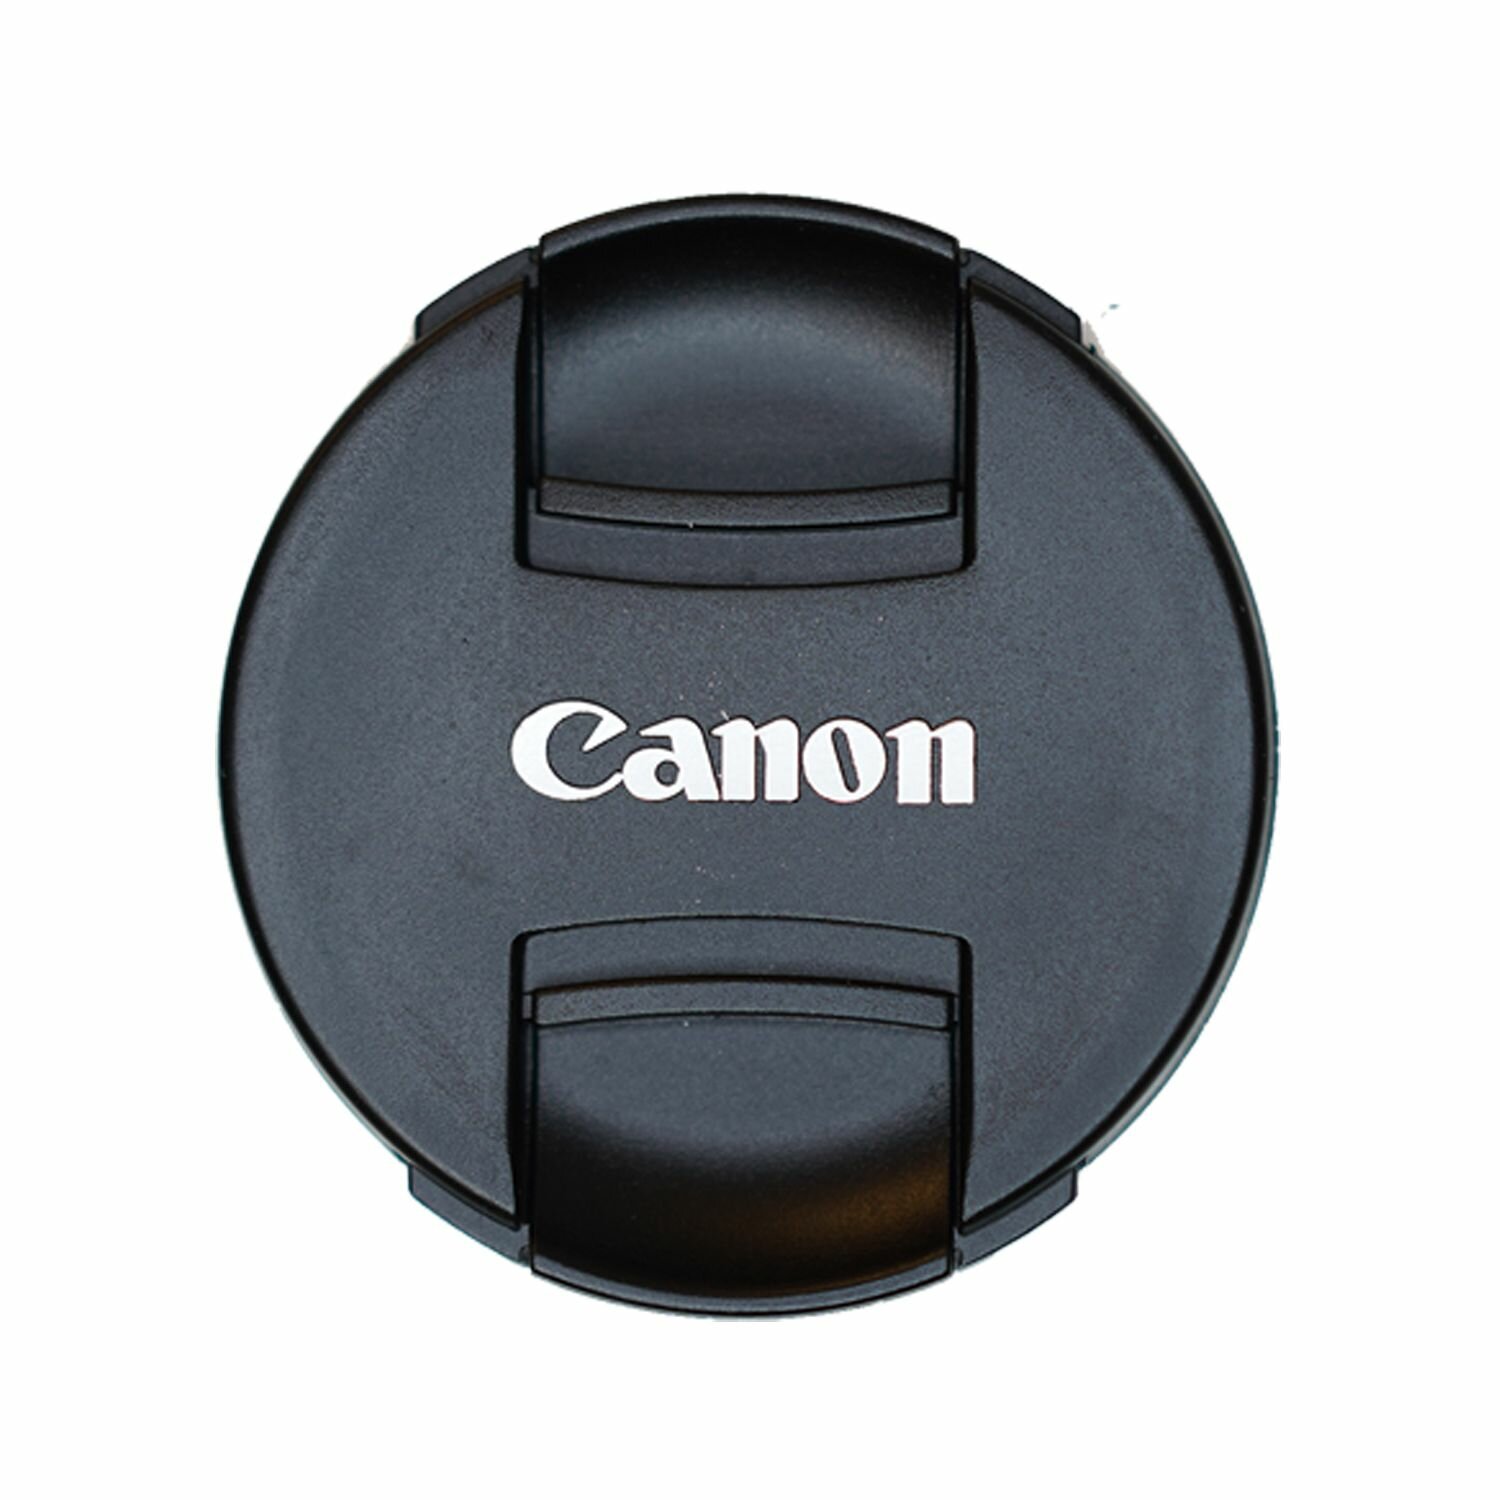 Защитная крышка 67 мм для объектива с надписью "Canon"